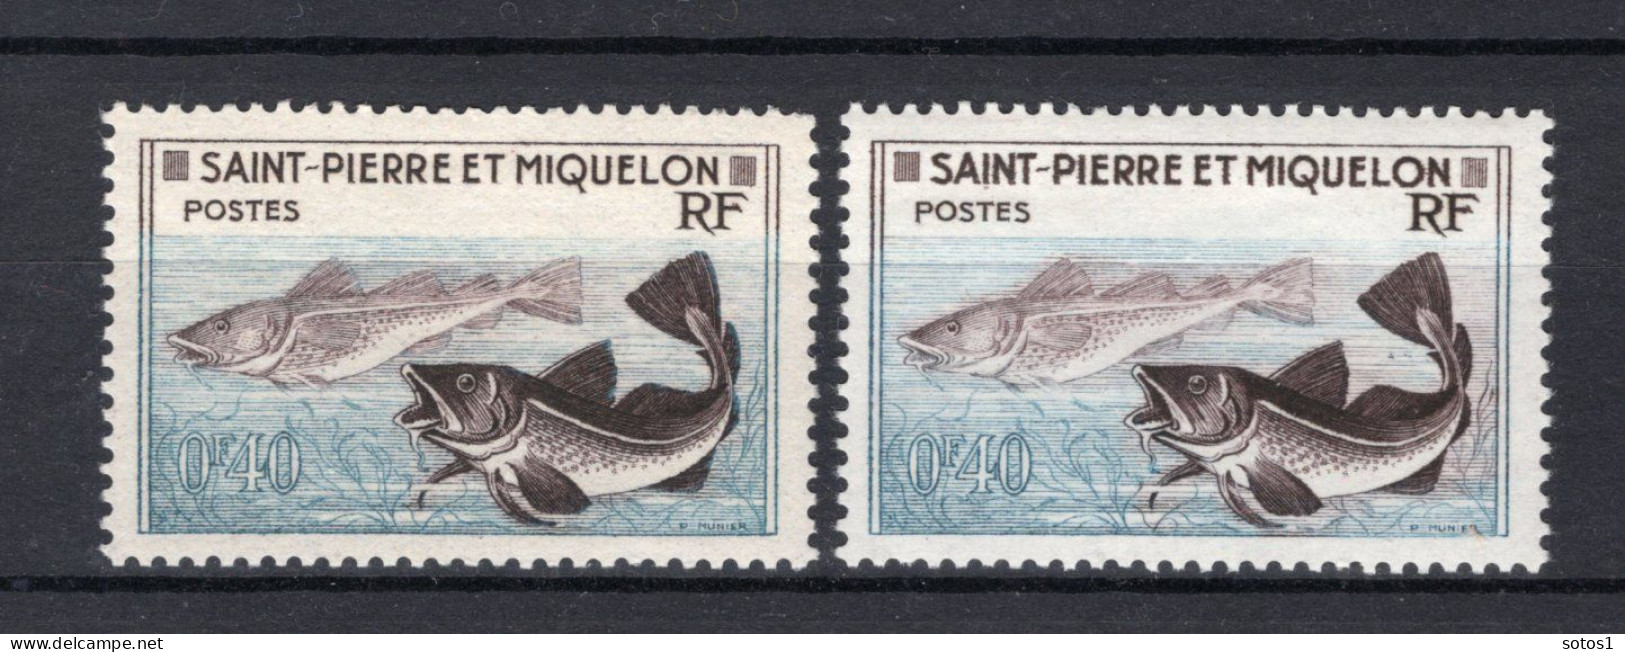 SAINT PIERRE - MIQUELON Yt. 353 MNH 1957 - Neufs